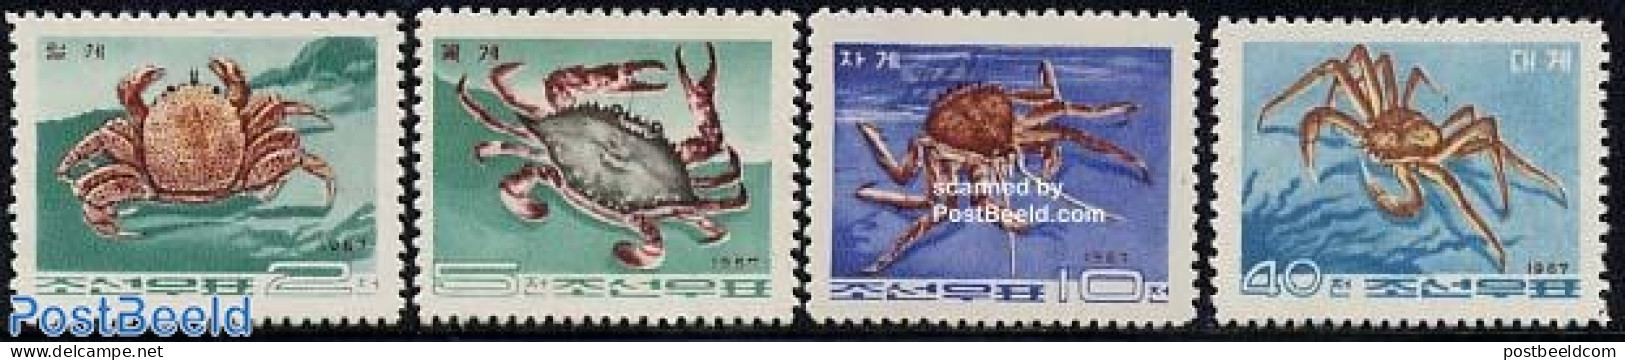 Korea, North 1967 Crabs 4v, Mint NH, Nature - Shells & Crustaceans - Crabs And Lobsters - Meereswelt